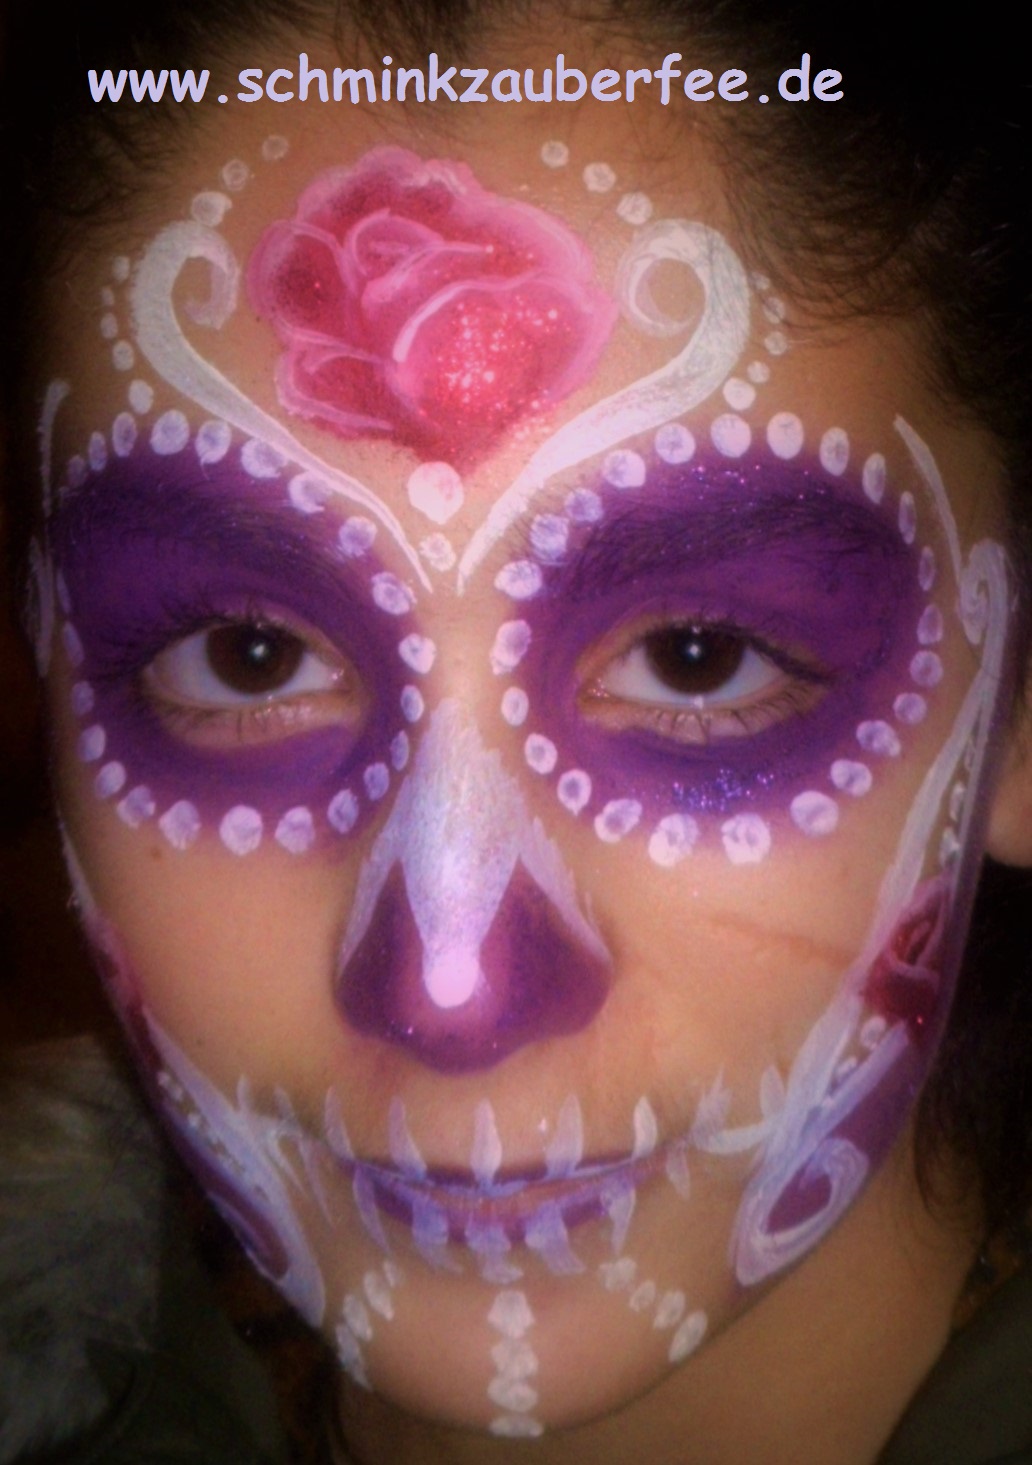 Eine Catrina (Sugar skull) ist eine traditionelle Gesichtsbemalung zum Tag der Toten in Mexiko um die Verstorbenen zu ehren